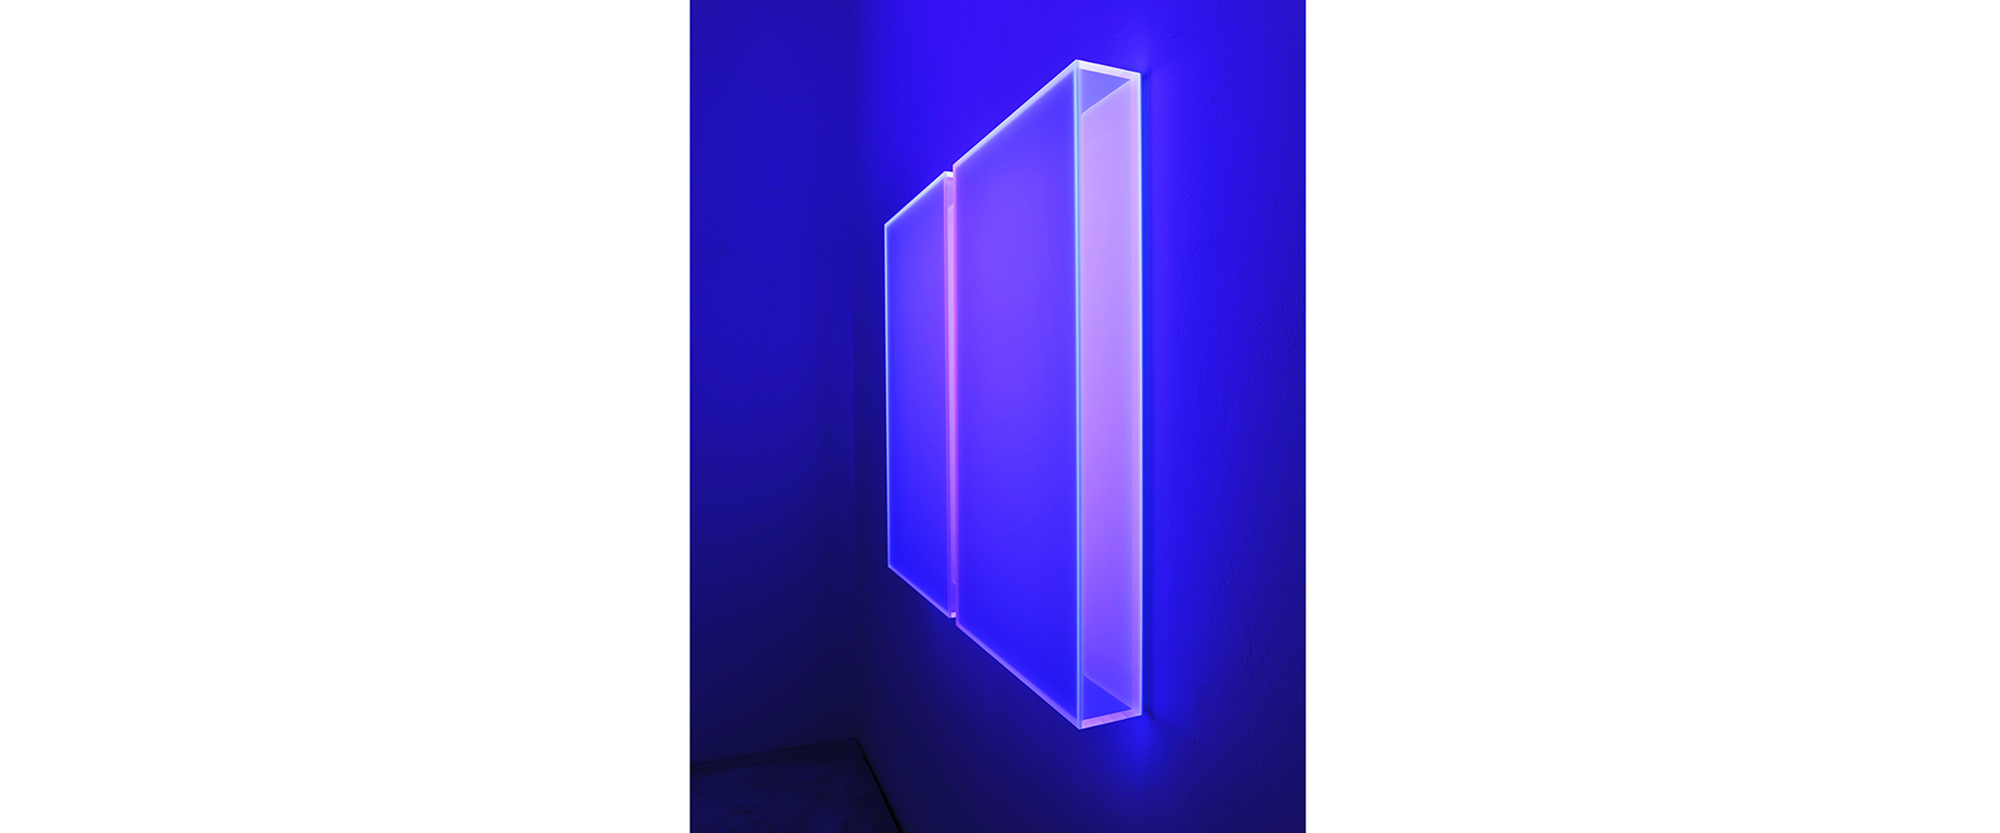 color satin ice blue amsterdam - 2018, Acrylglas, fluoreszierend, 2teilig, 80 x 90 x 9 cm, Schwarzlichtansicht